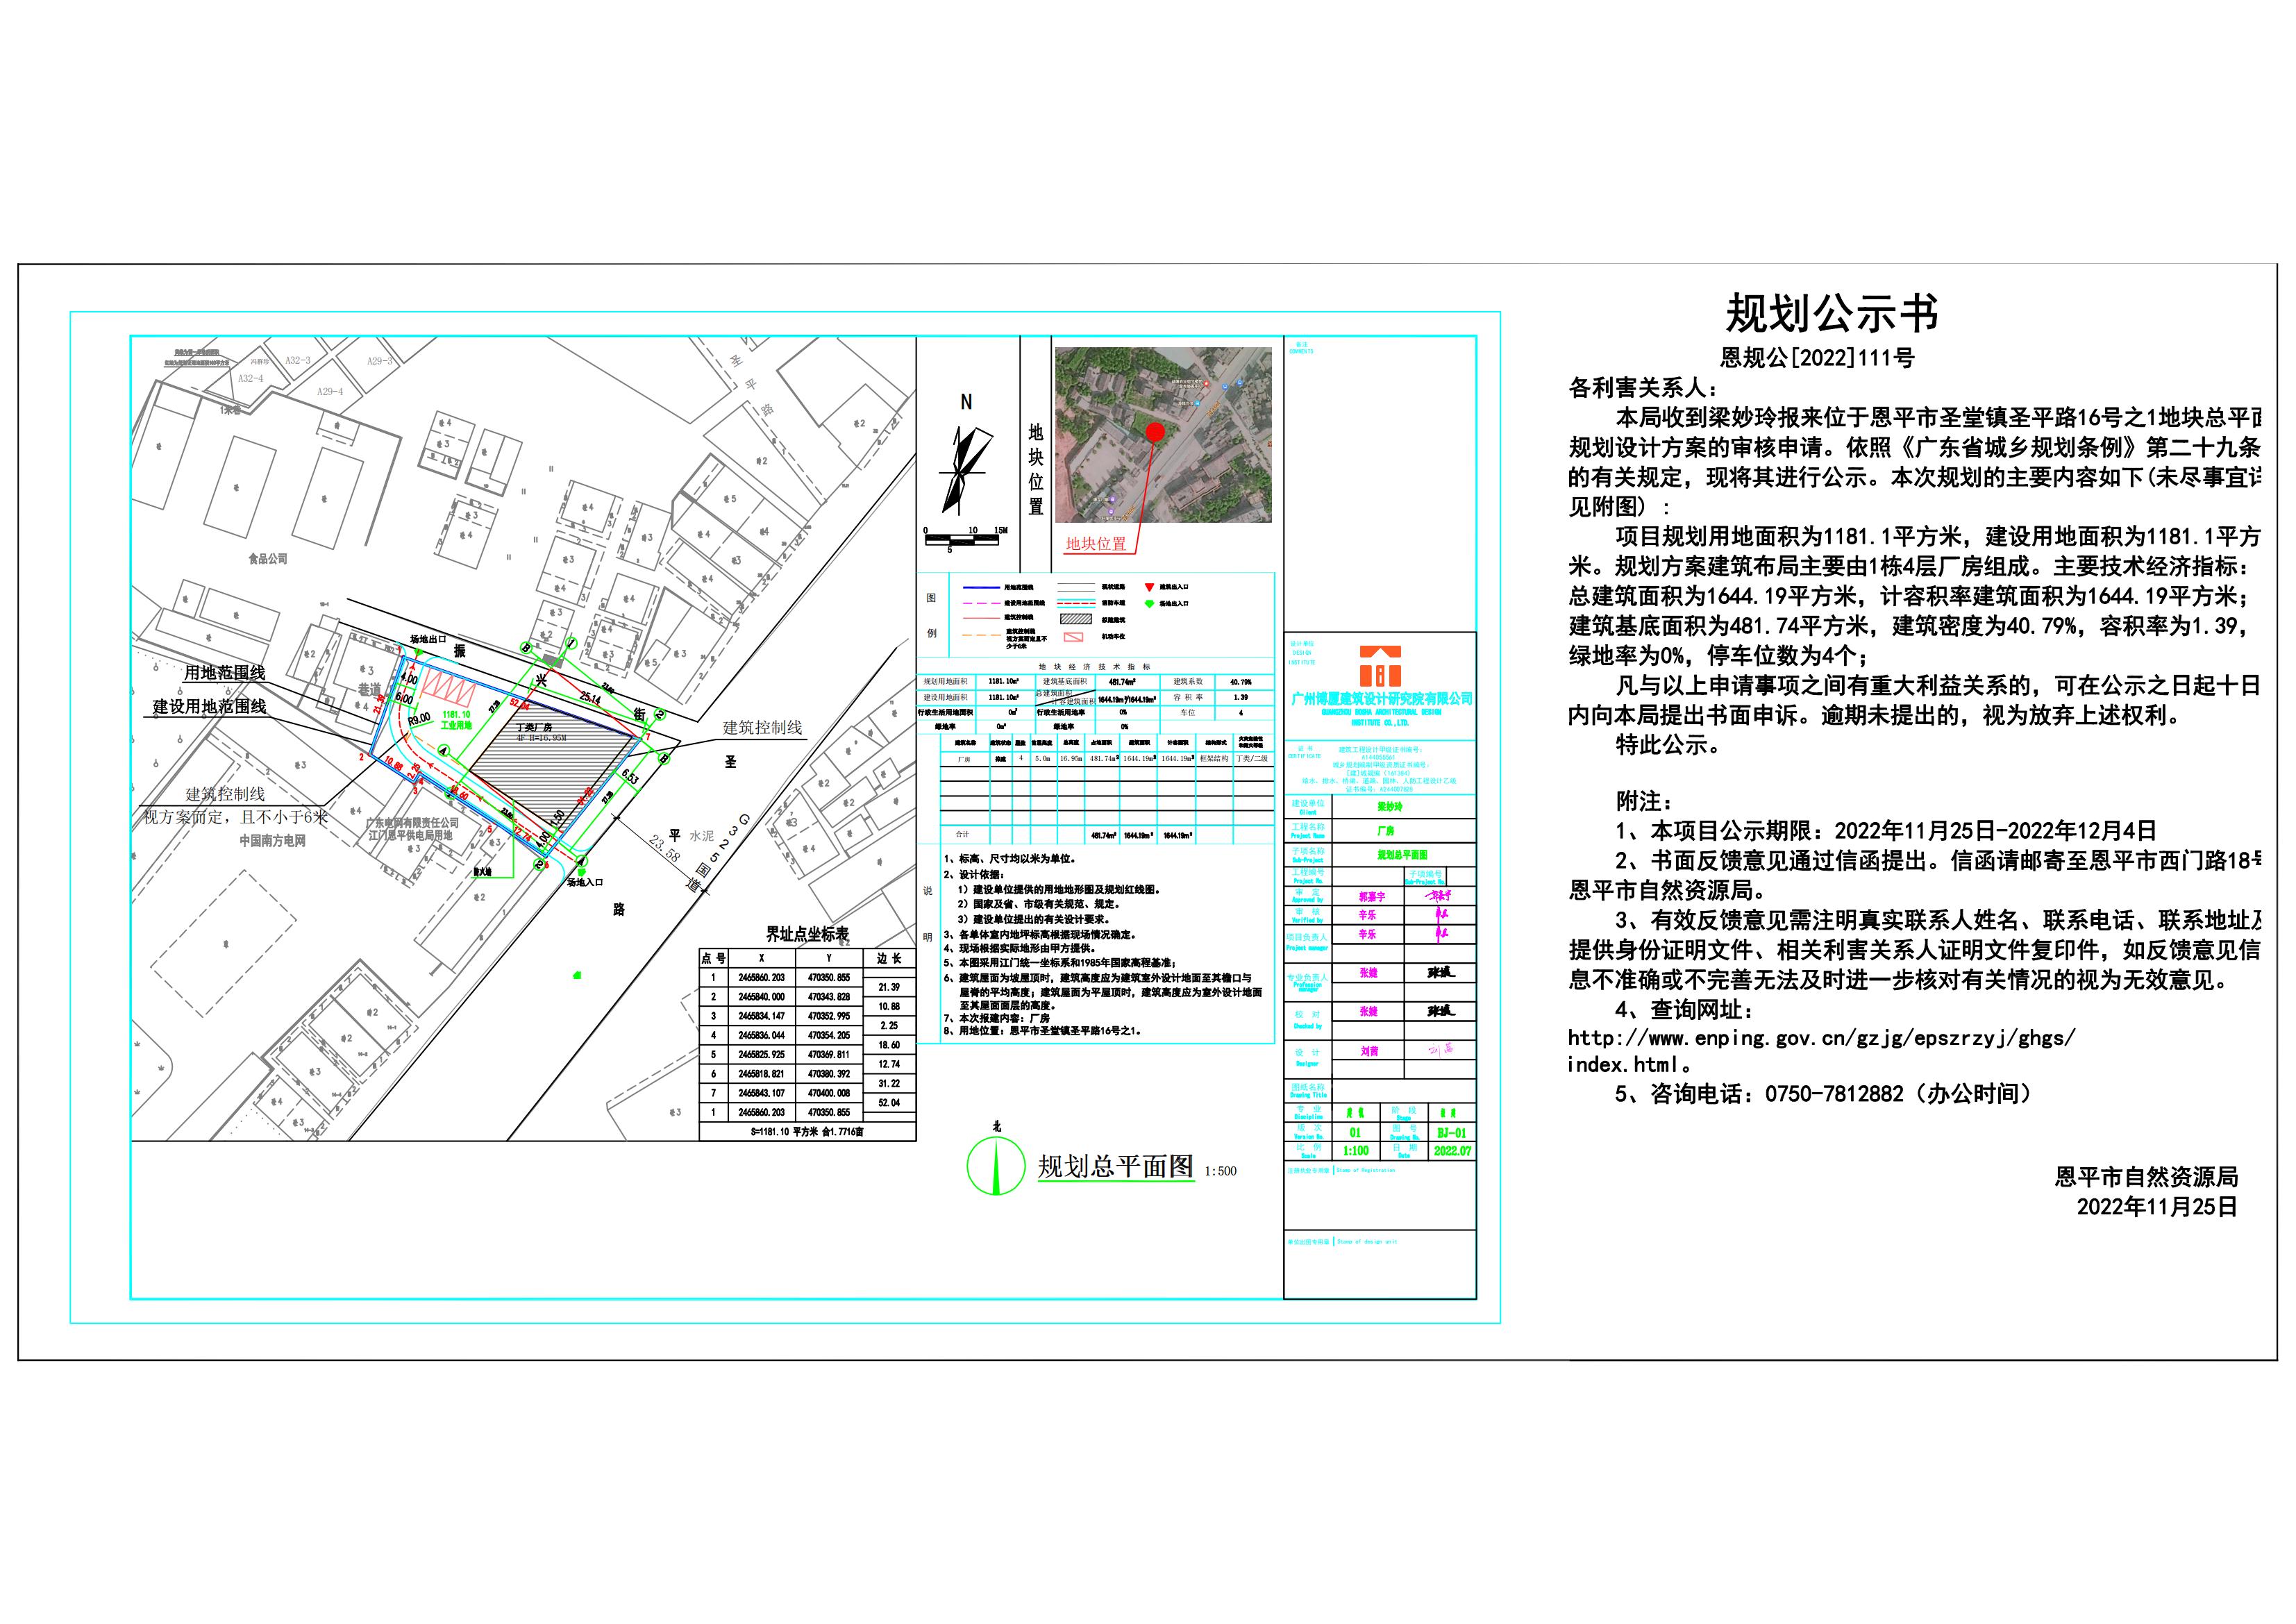 111.关于恩平市圣堂镇圣平路16号之1总平面规划设计方案的公示 Model (1)_00.jpg